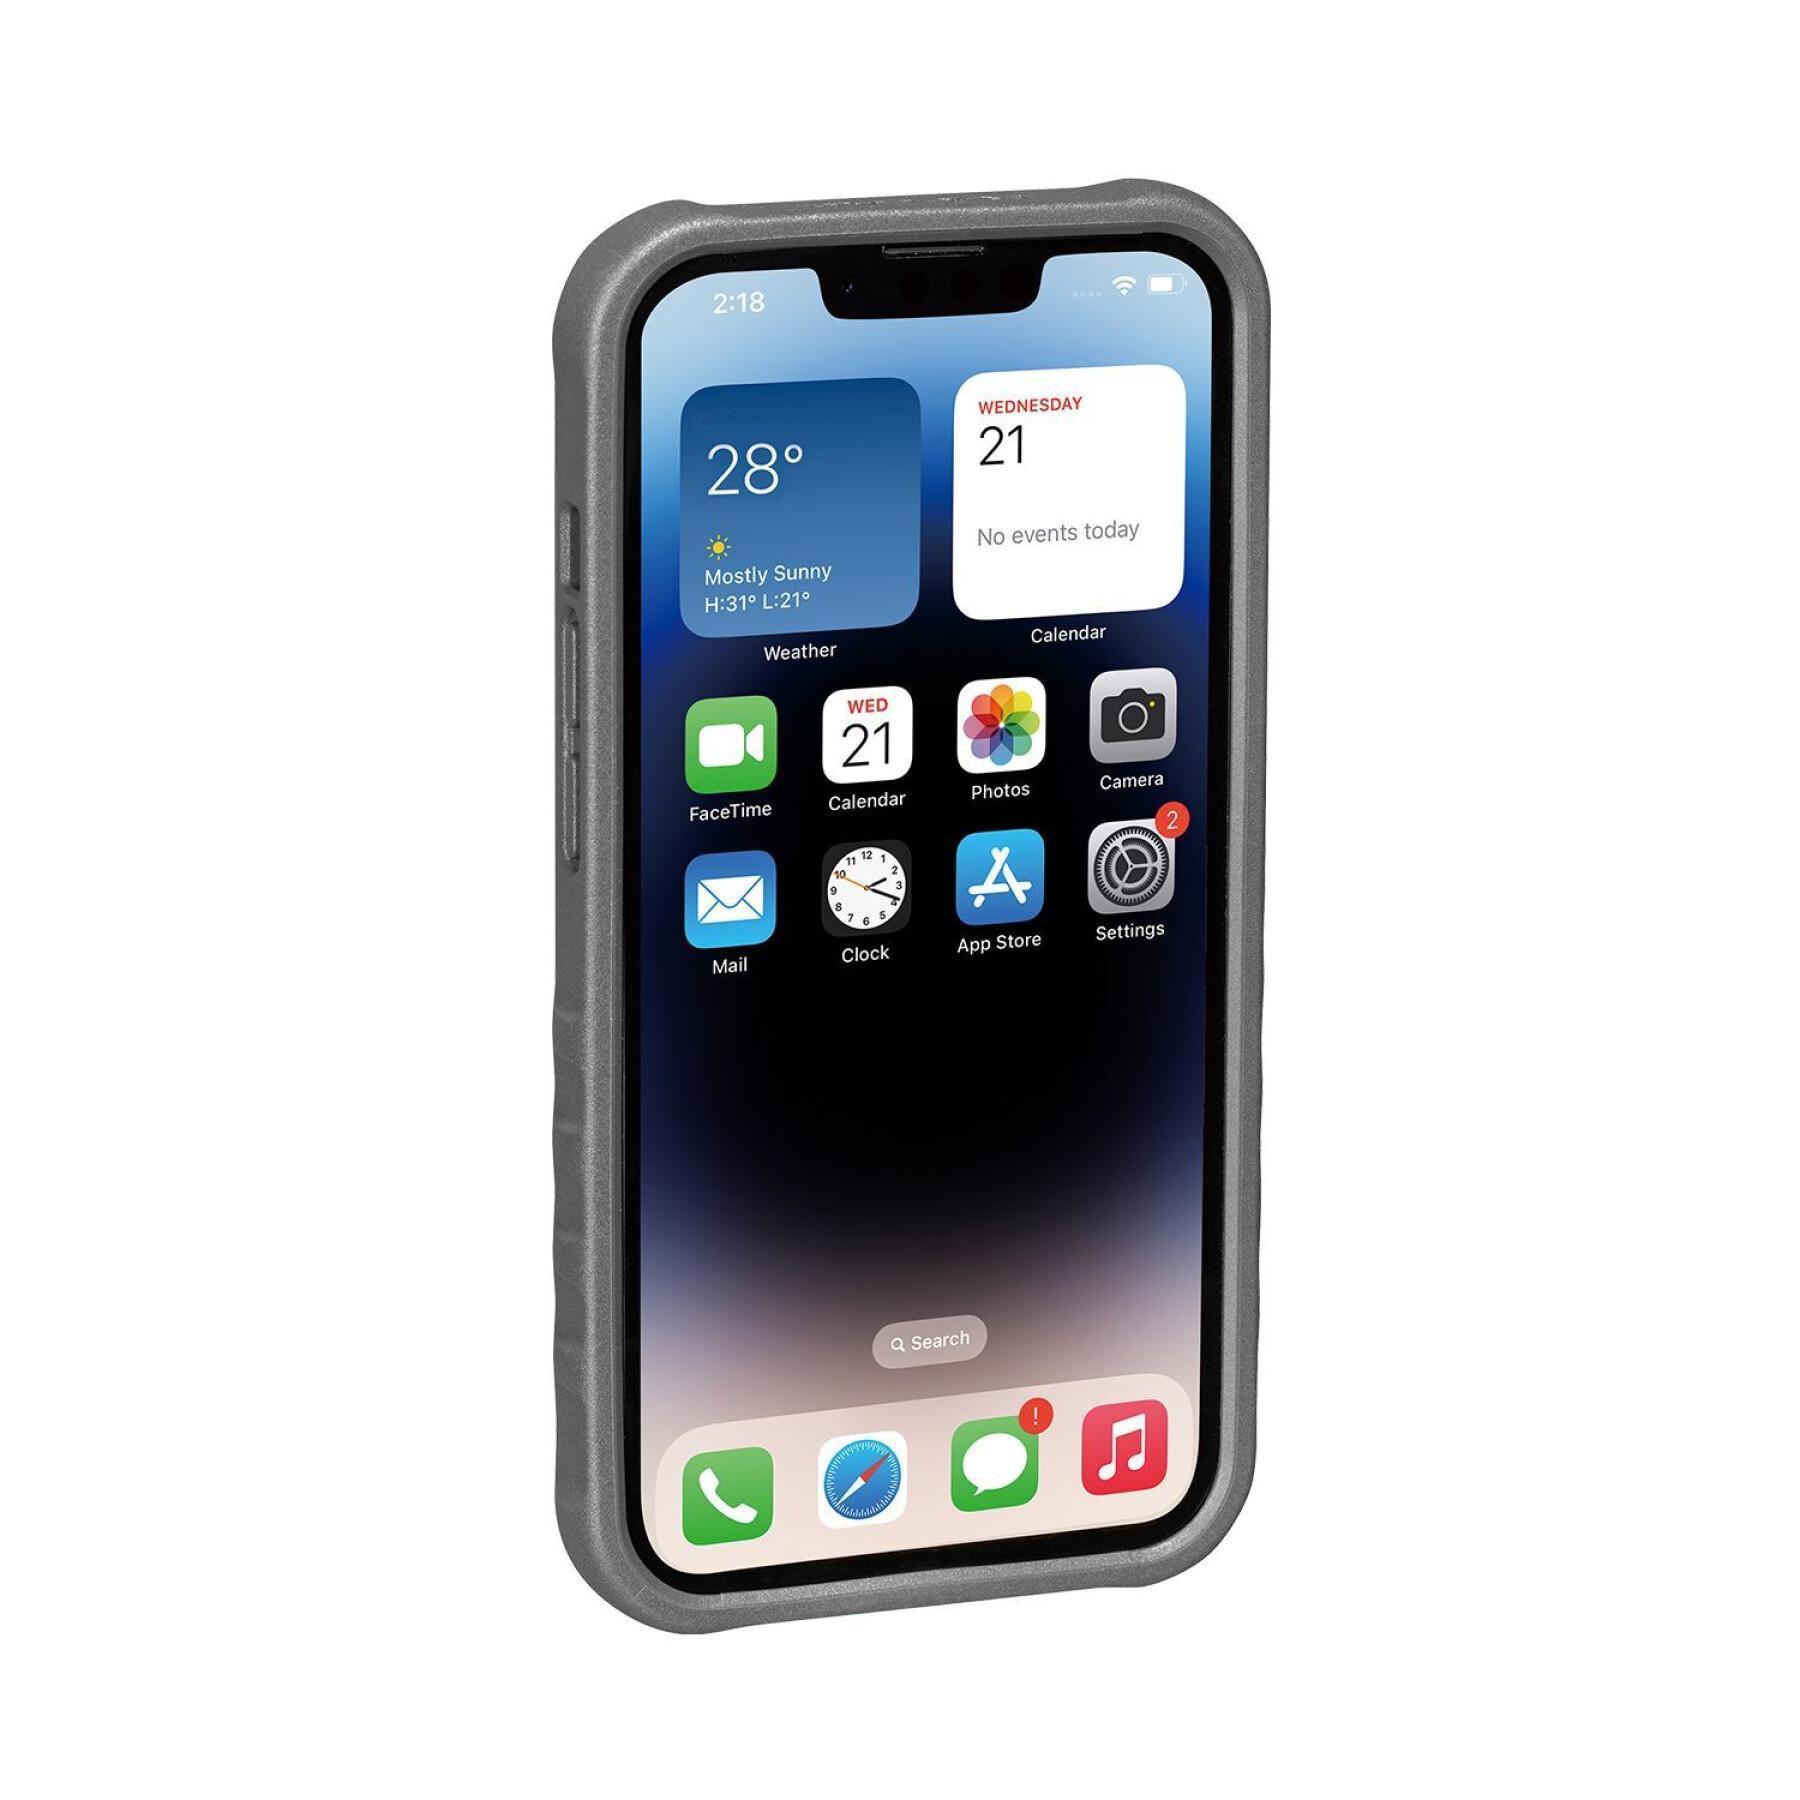 Smartphone case Topeak iPhone 14